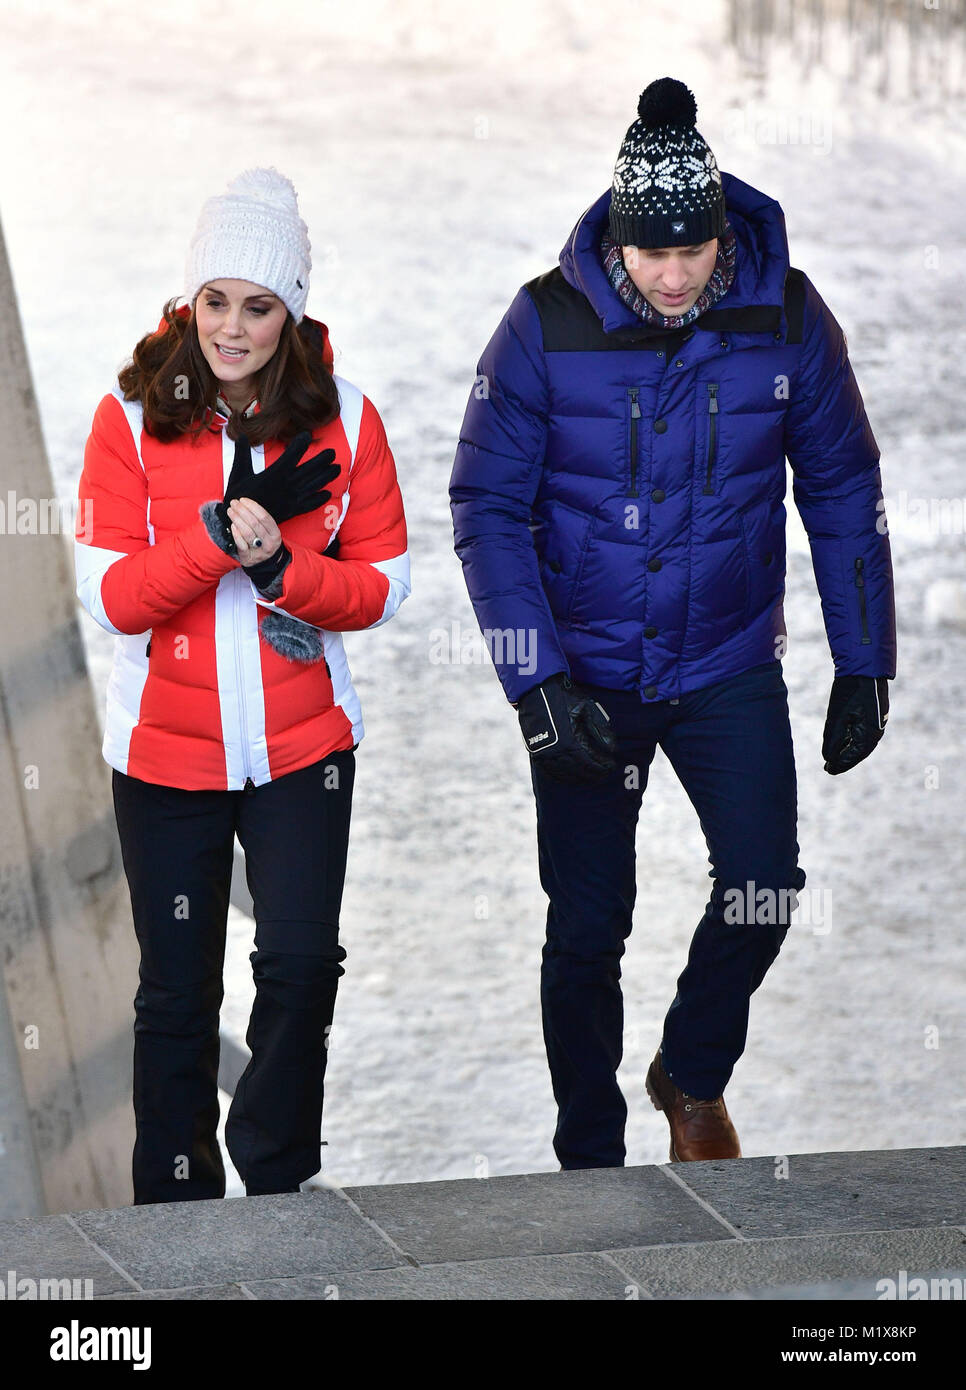 Der Herzog und die Herzogin von Cambridge anreisen junior Skispringer aus norwegischen Team zu beobachten vom Holmenkollen in Oslo, Norwegen, am letzten Tag der Tour von Skandinavien. Stockfoto